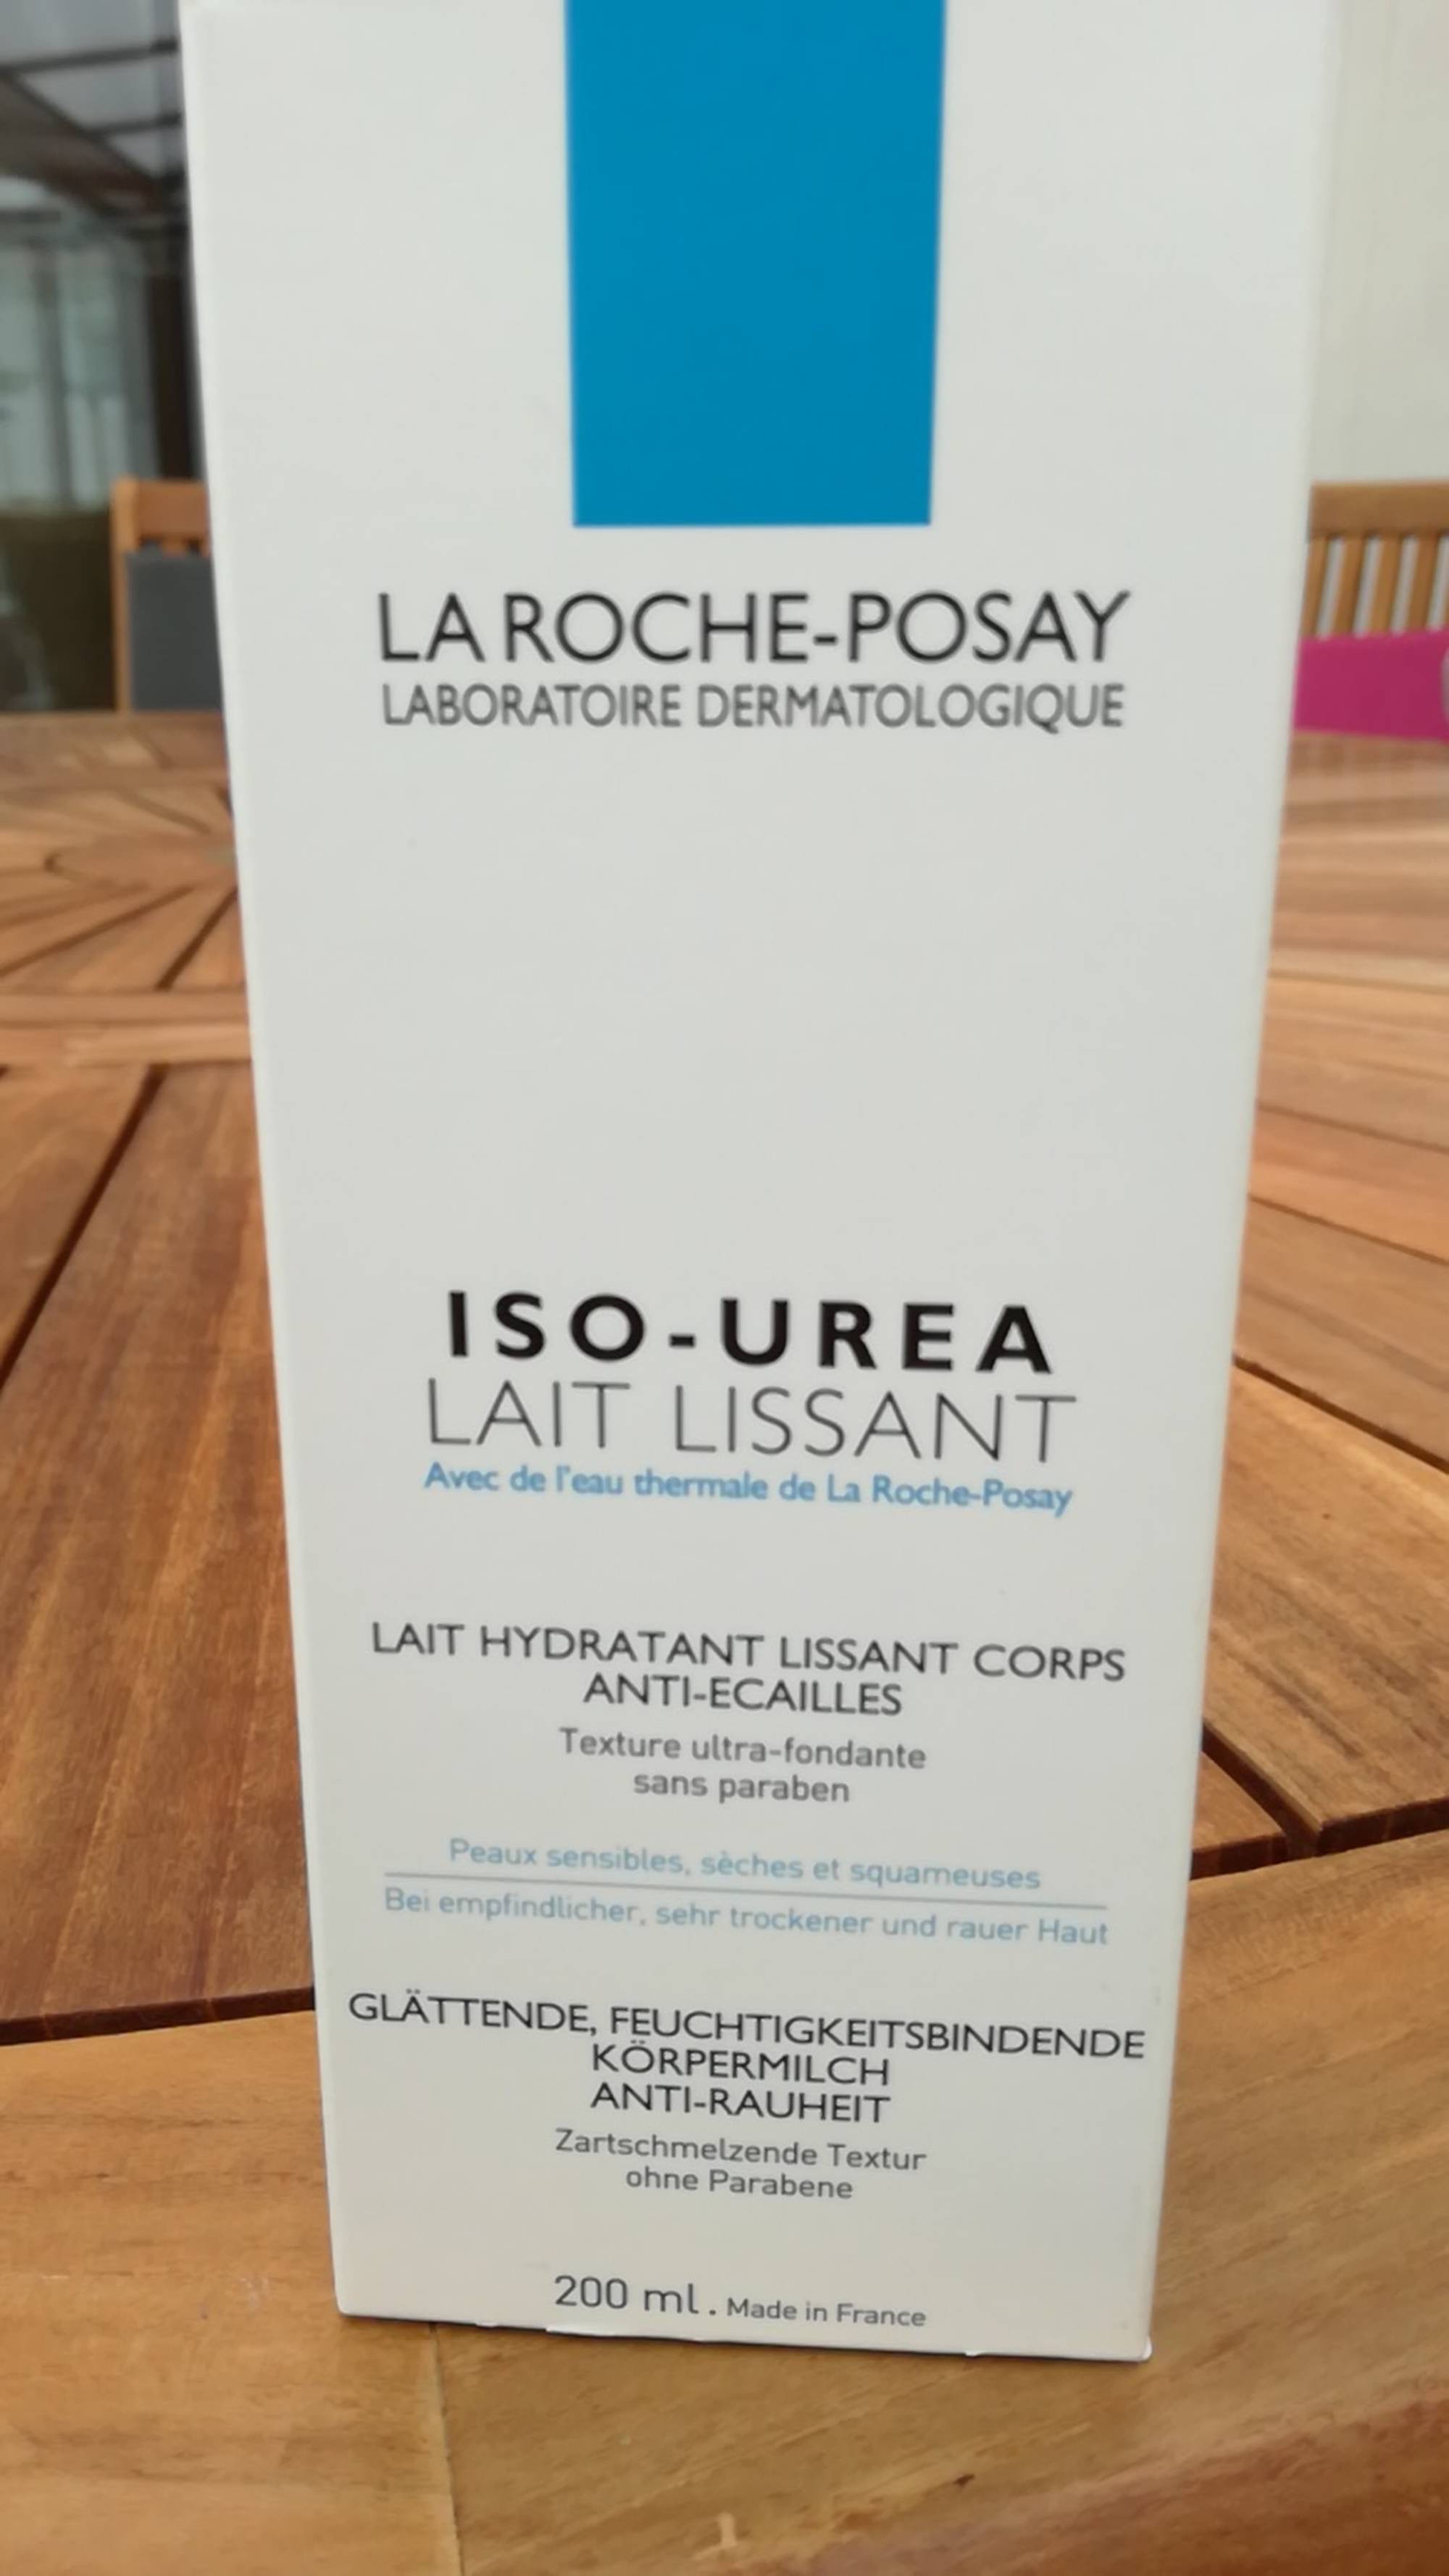 LA ROCHE-POSAY - Iso-urea - Lait hydratant lissant corps